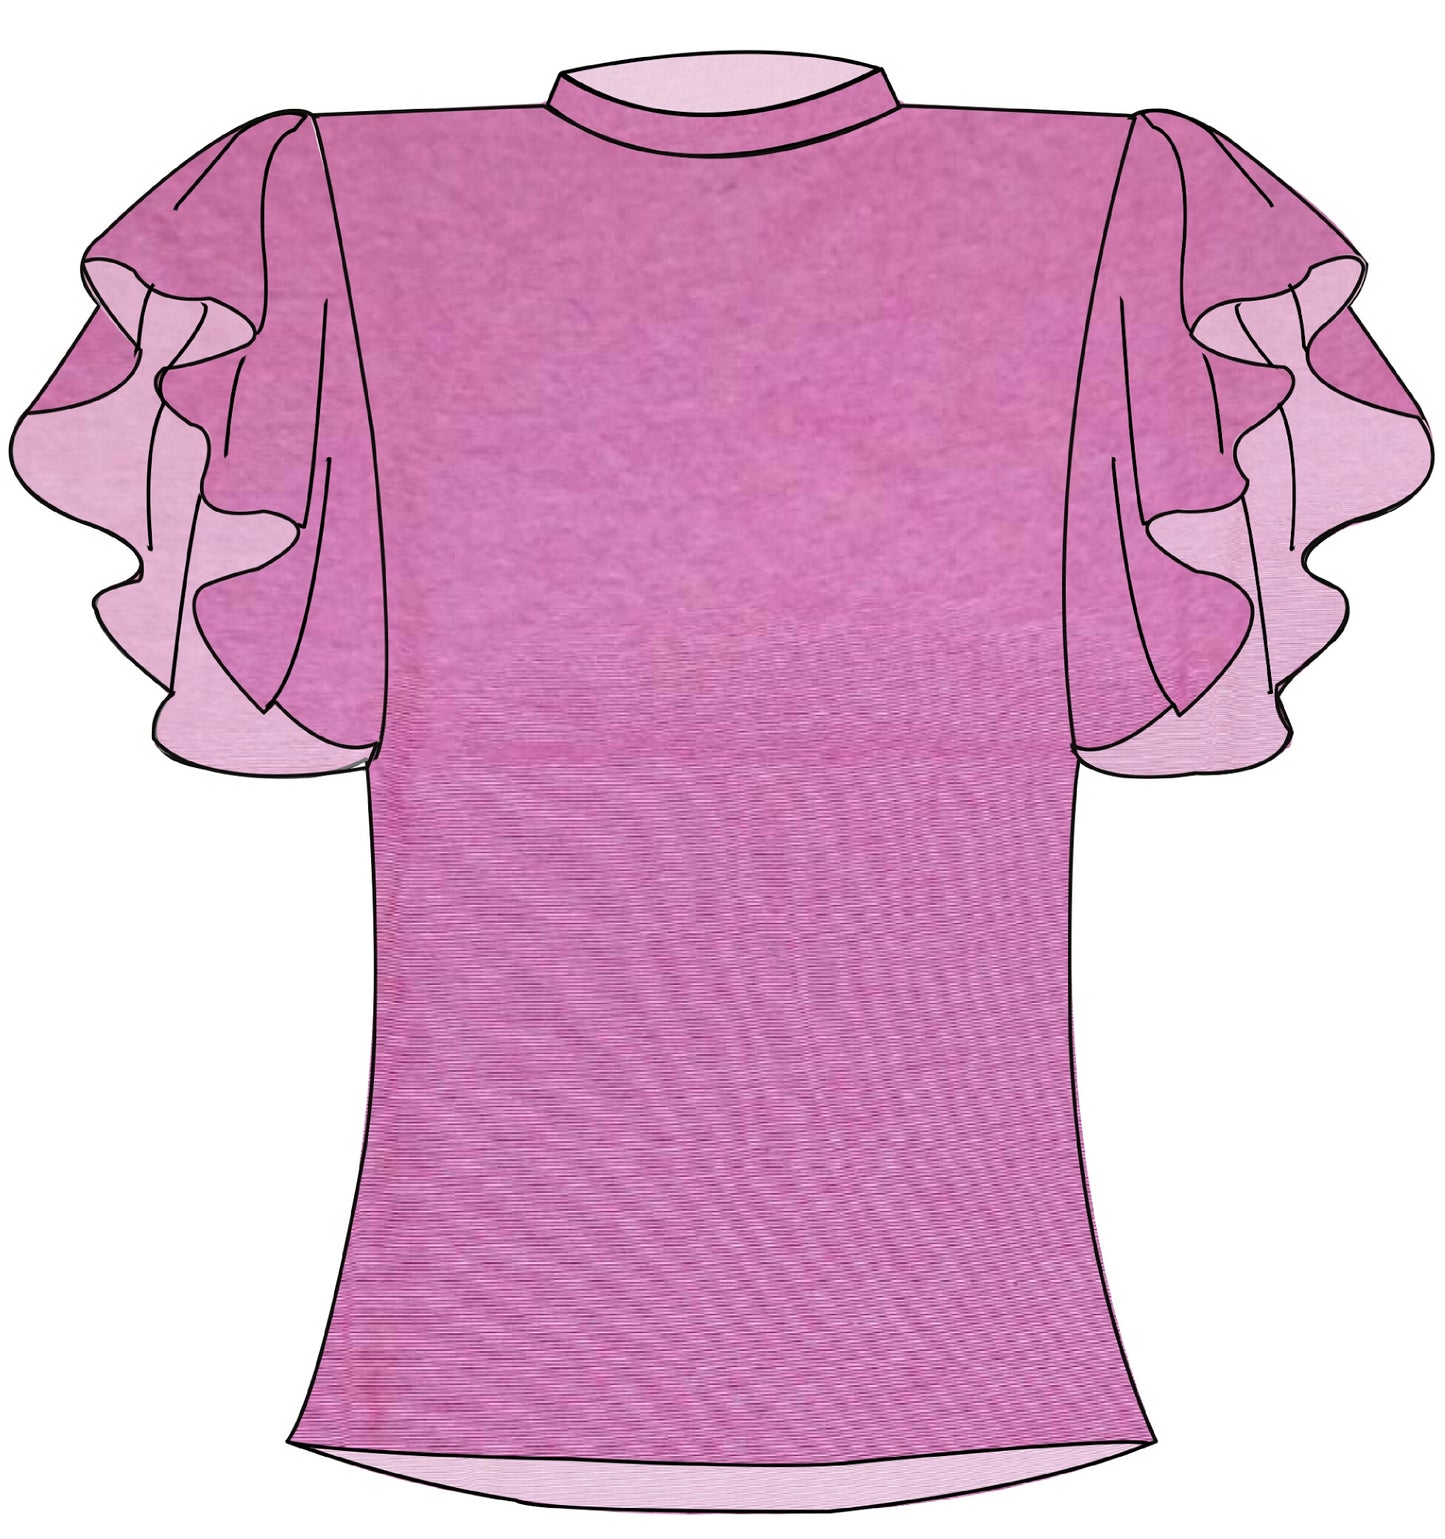 Peachy Blush Women's Tshirt